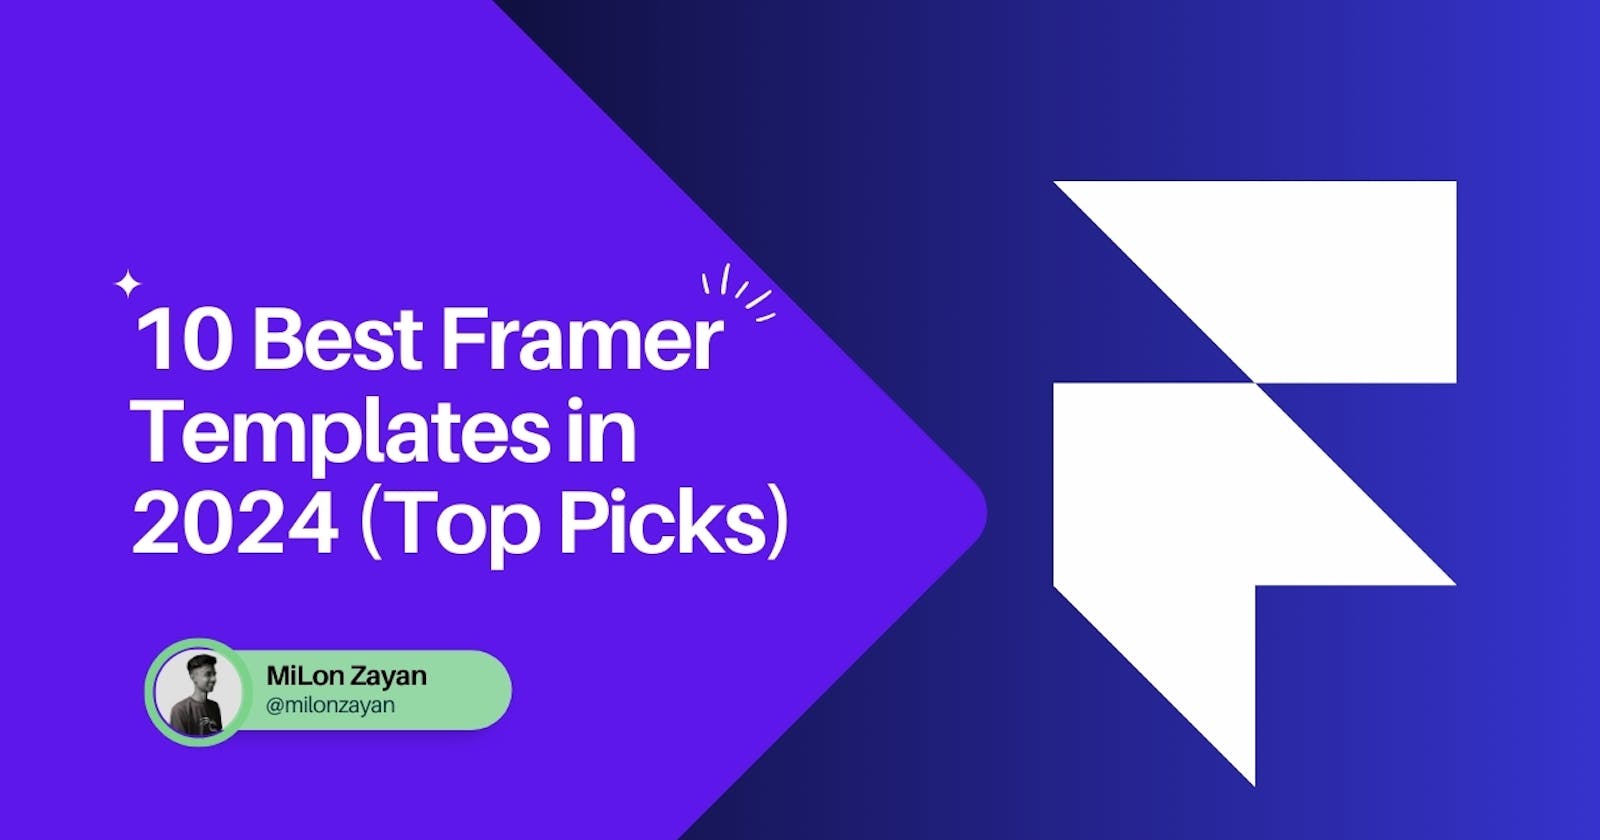 10 Best Framer Templates in 2024 (Top Picks)